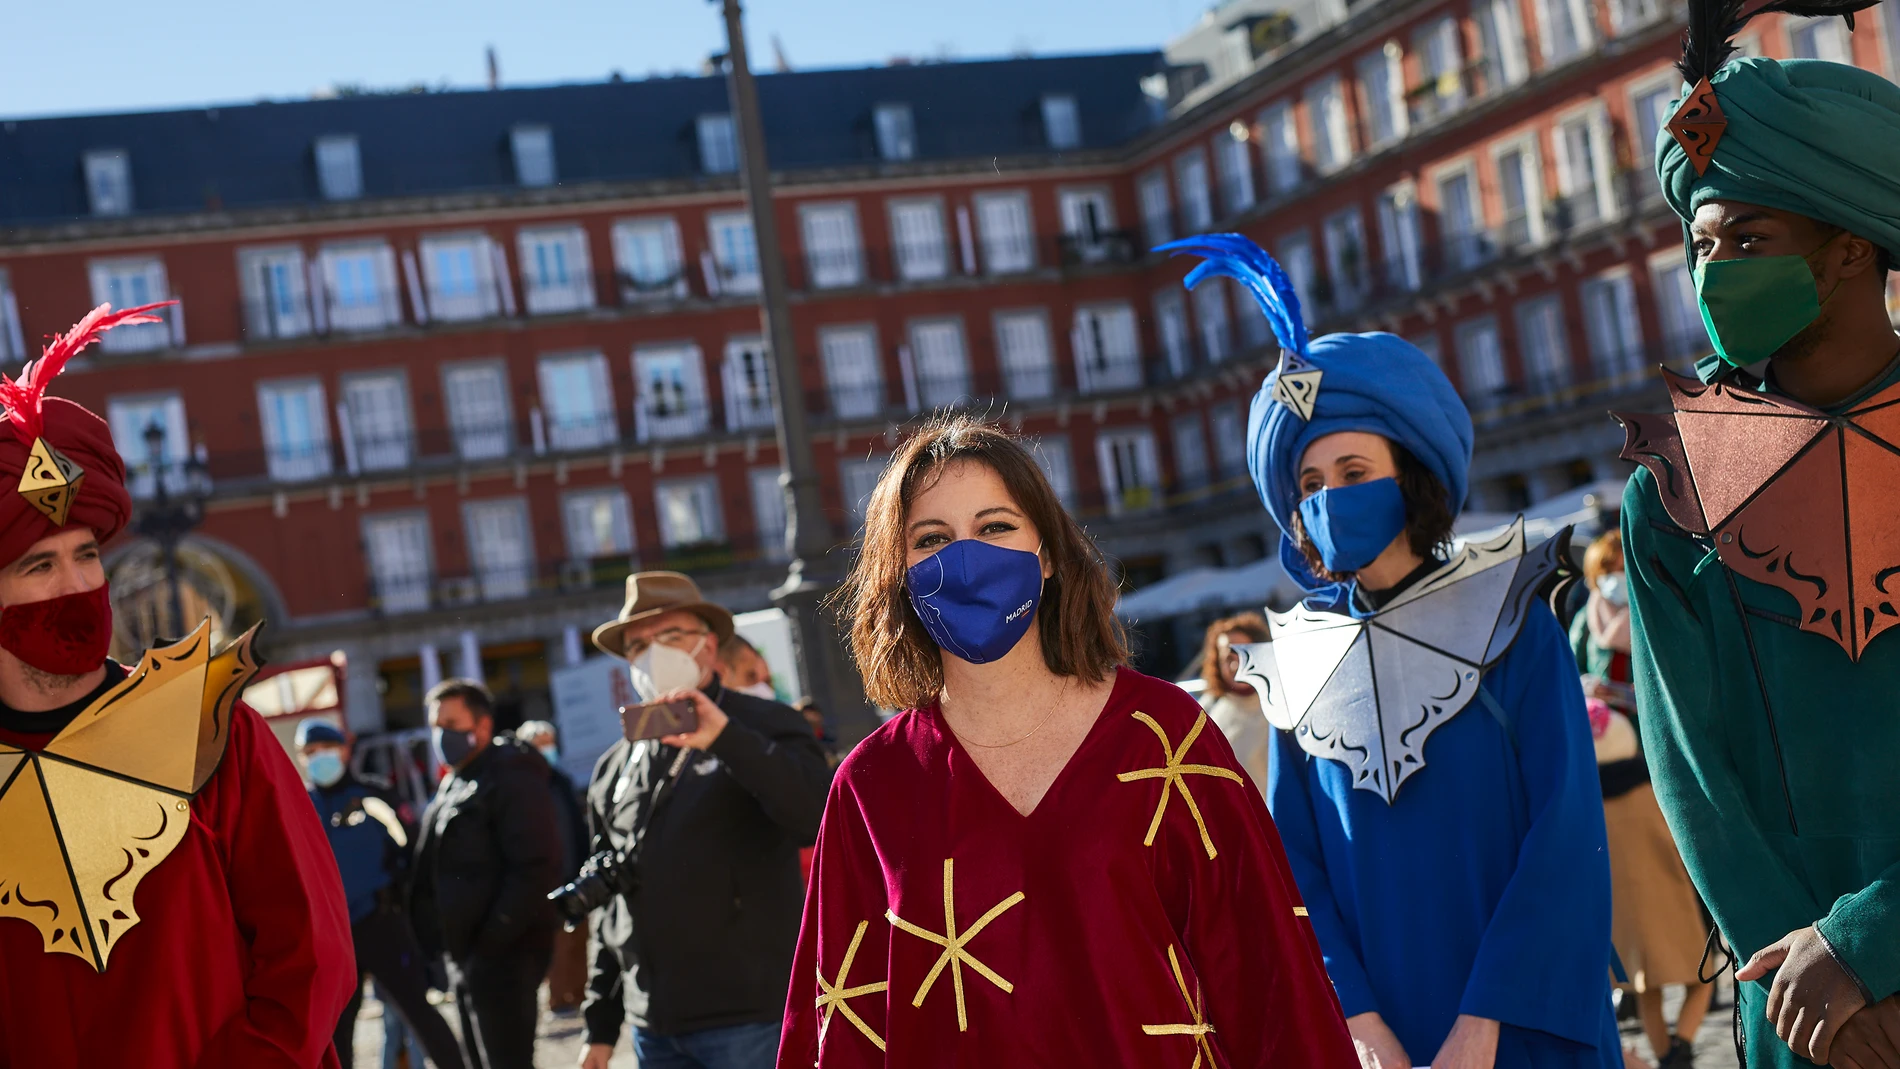 La delegada del Área de Cultura, Turismo y Deporte del Ayuntamiento de Madrid, Andrea Levy (2i), junto a los Pajes Reales, en Madrid, explica cómo será la llegada de los Reyes Magos a la ciudad